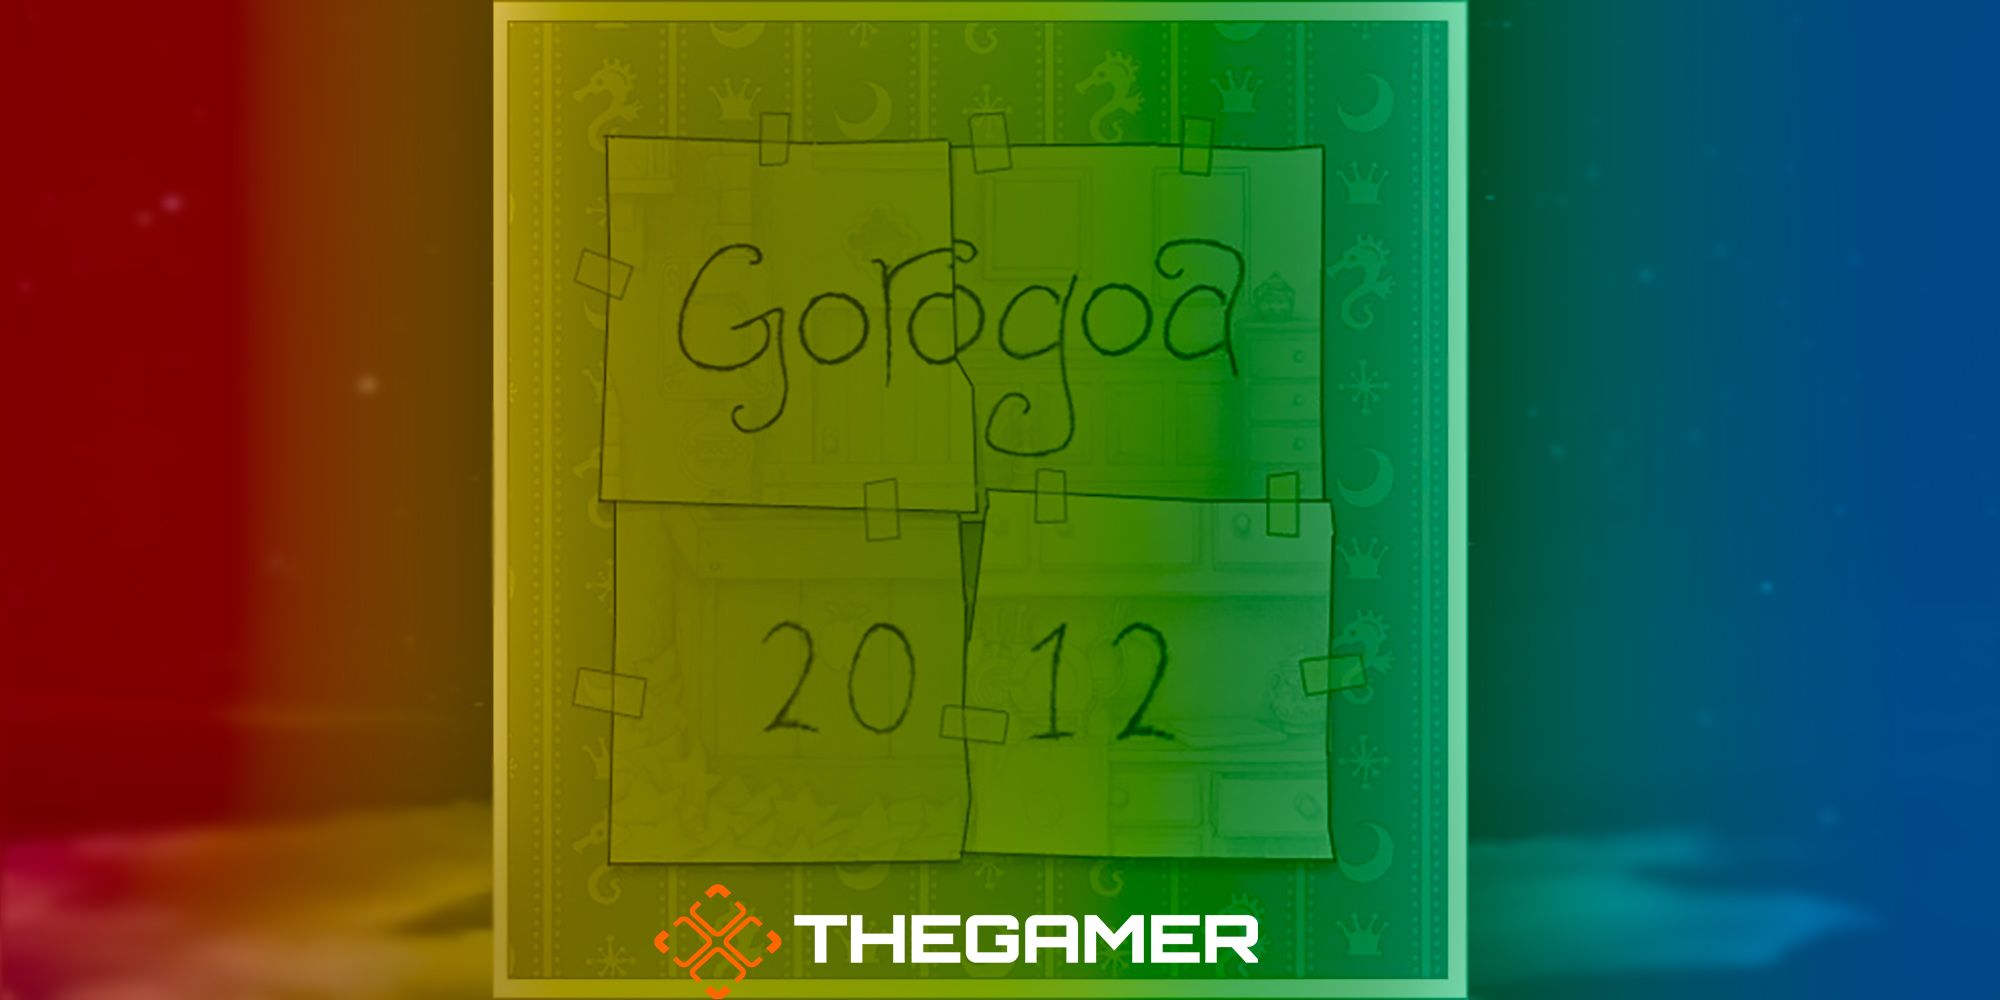 A custom image featuring the original Gorogoa logo from the 2012 Demo.